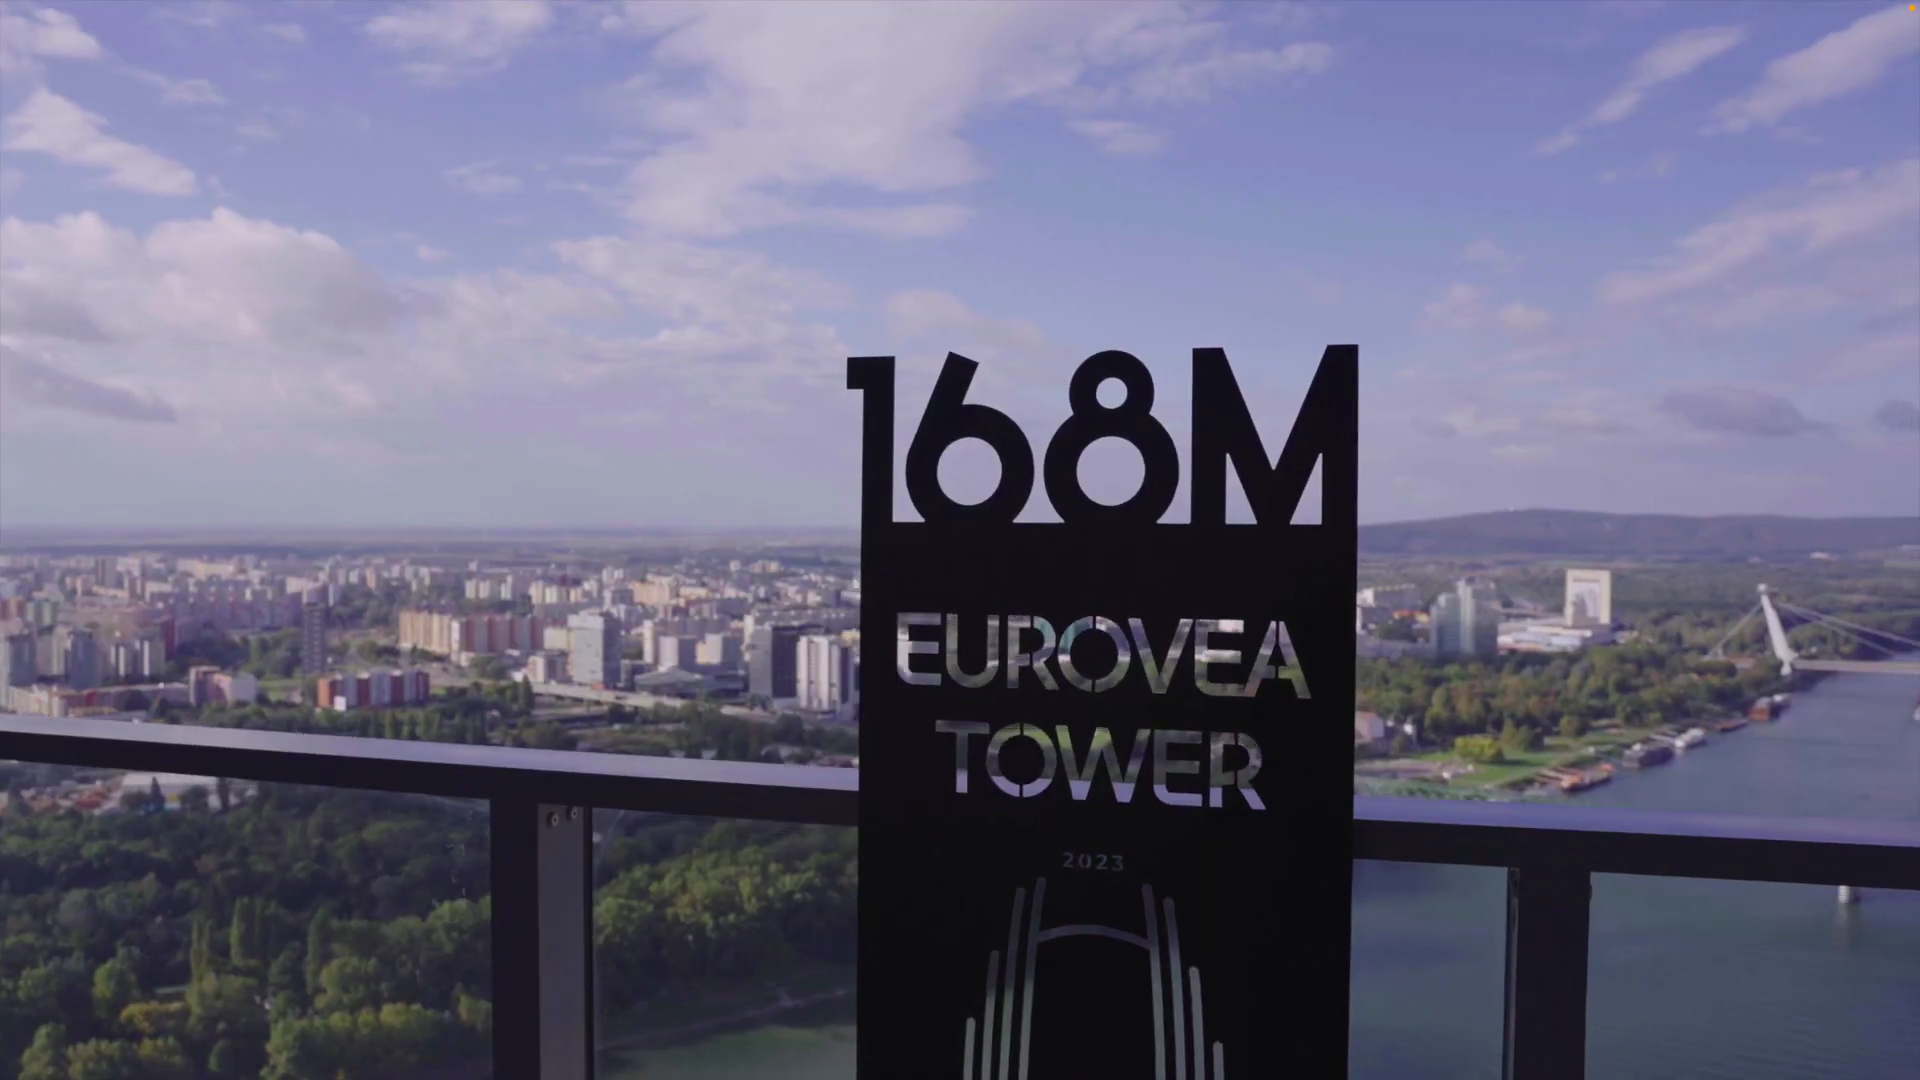 Deň otvorených dverí na Eurovea Tower